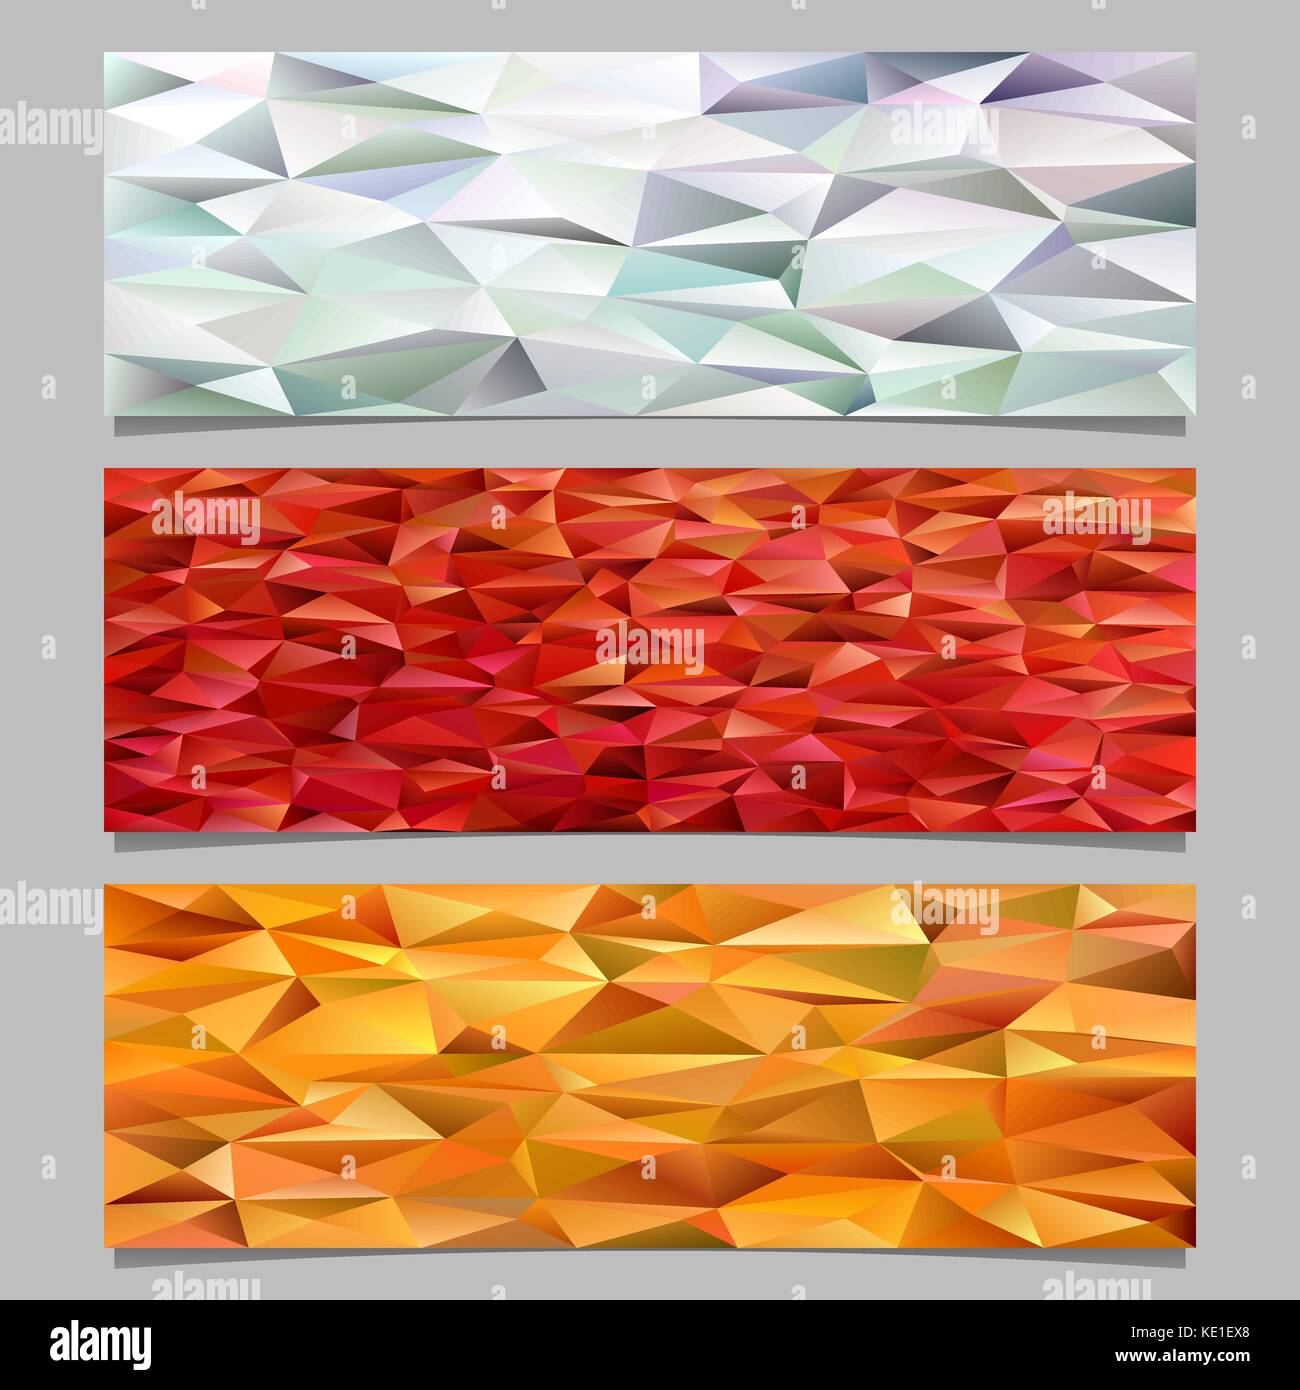 Abstrakte triangle polygon Muster Mosaik banner Vorlage Hintergrund - Vektorgrafiken aus farbigen Dreiecke Stock Vektor